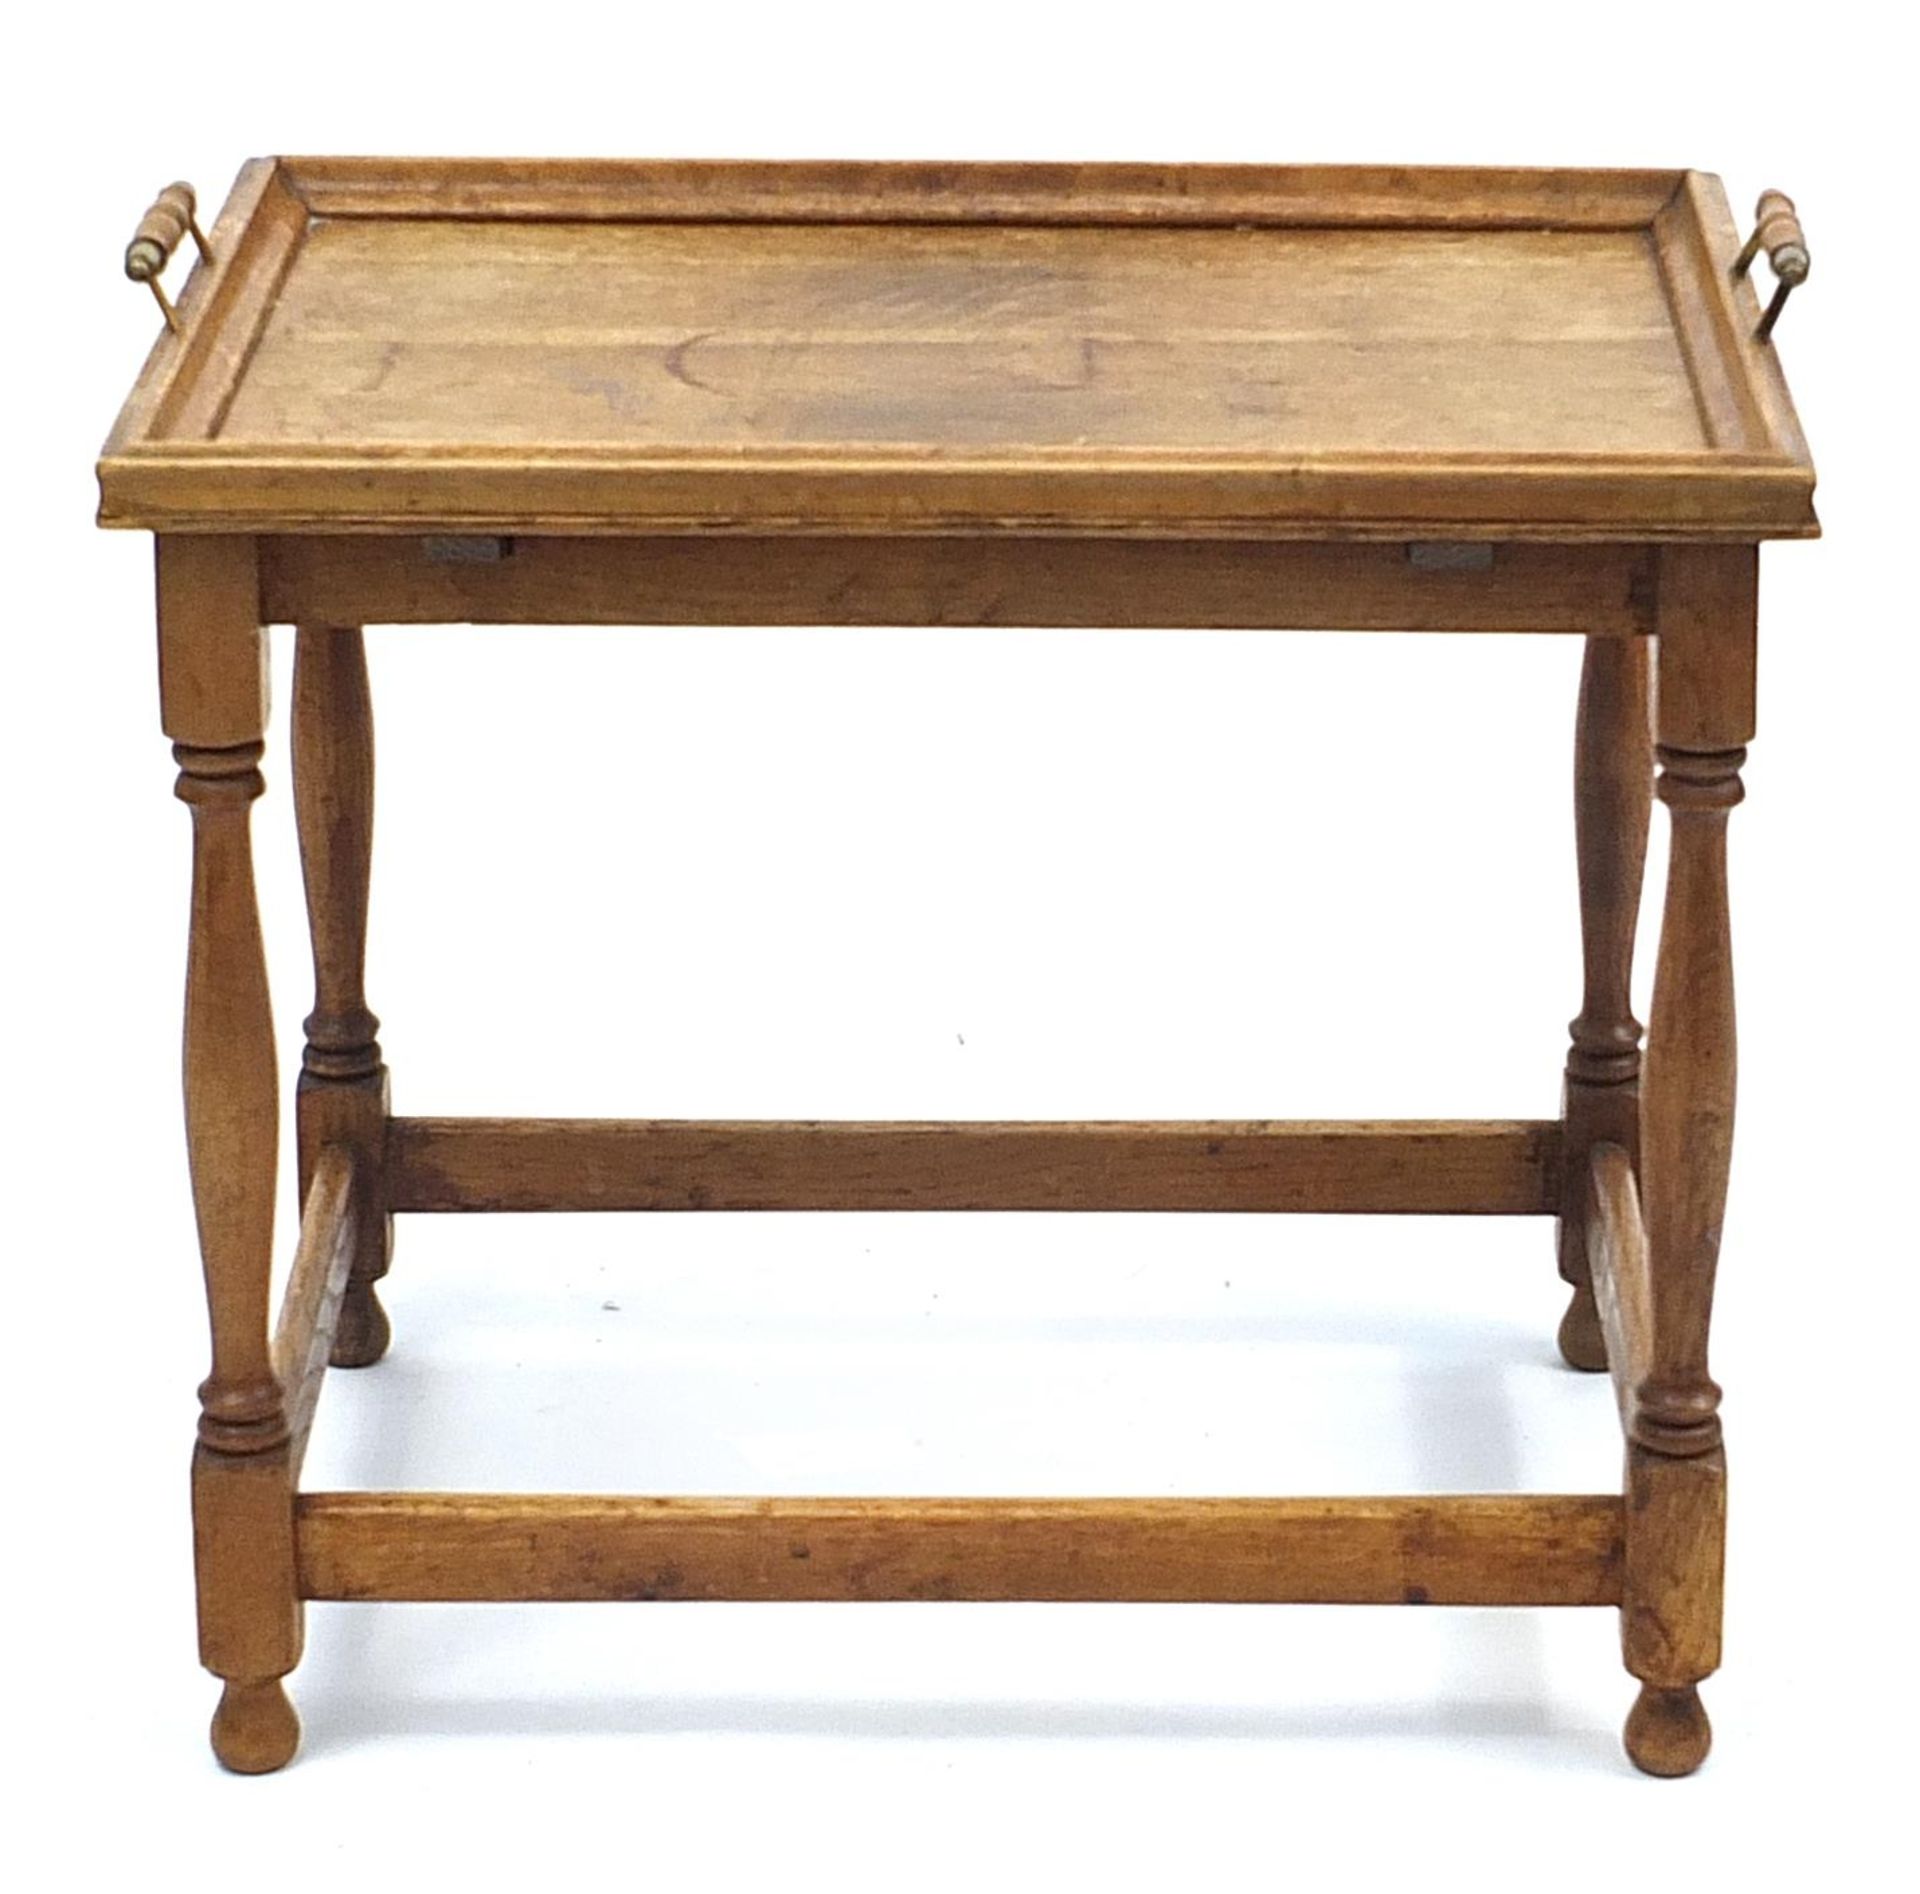 Oak tray table, 48cm H x 53cm W x 38cm D - Image 2 of 3